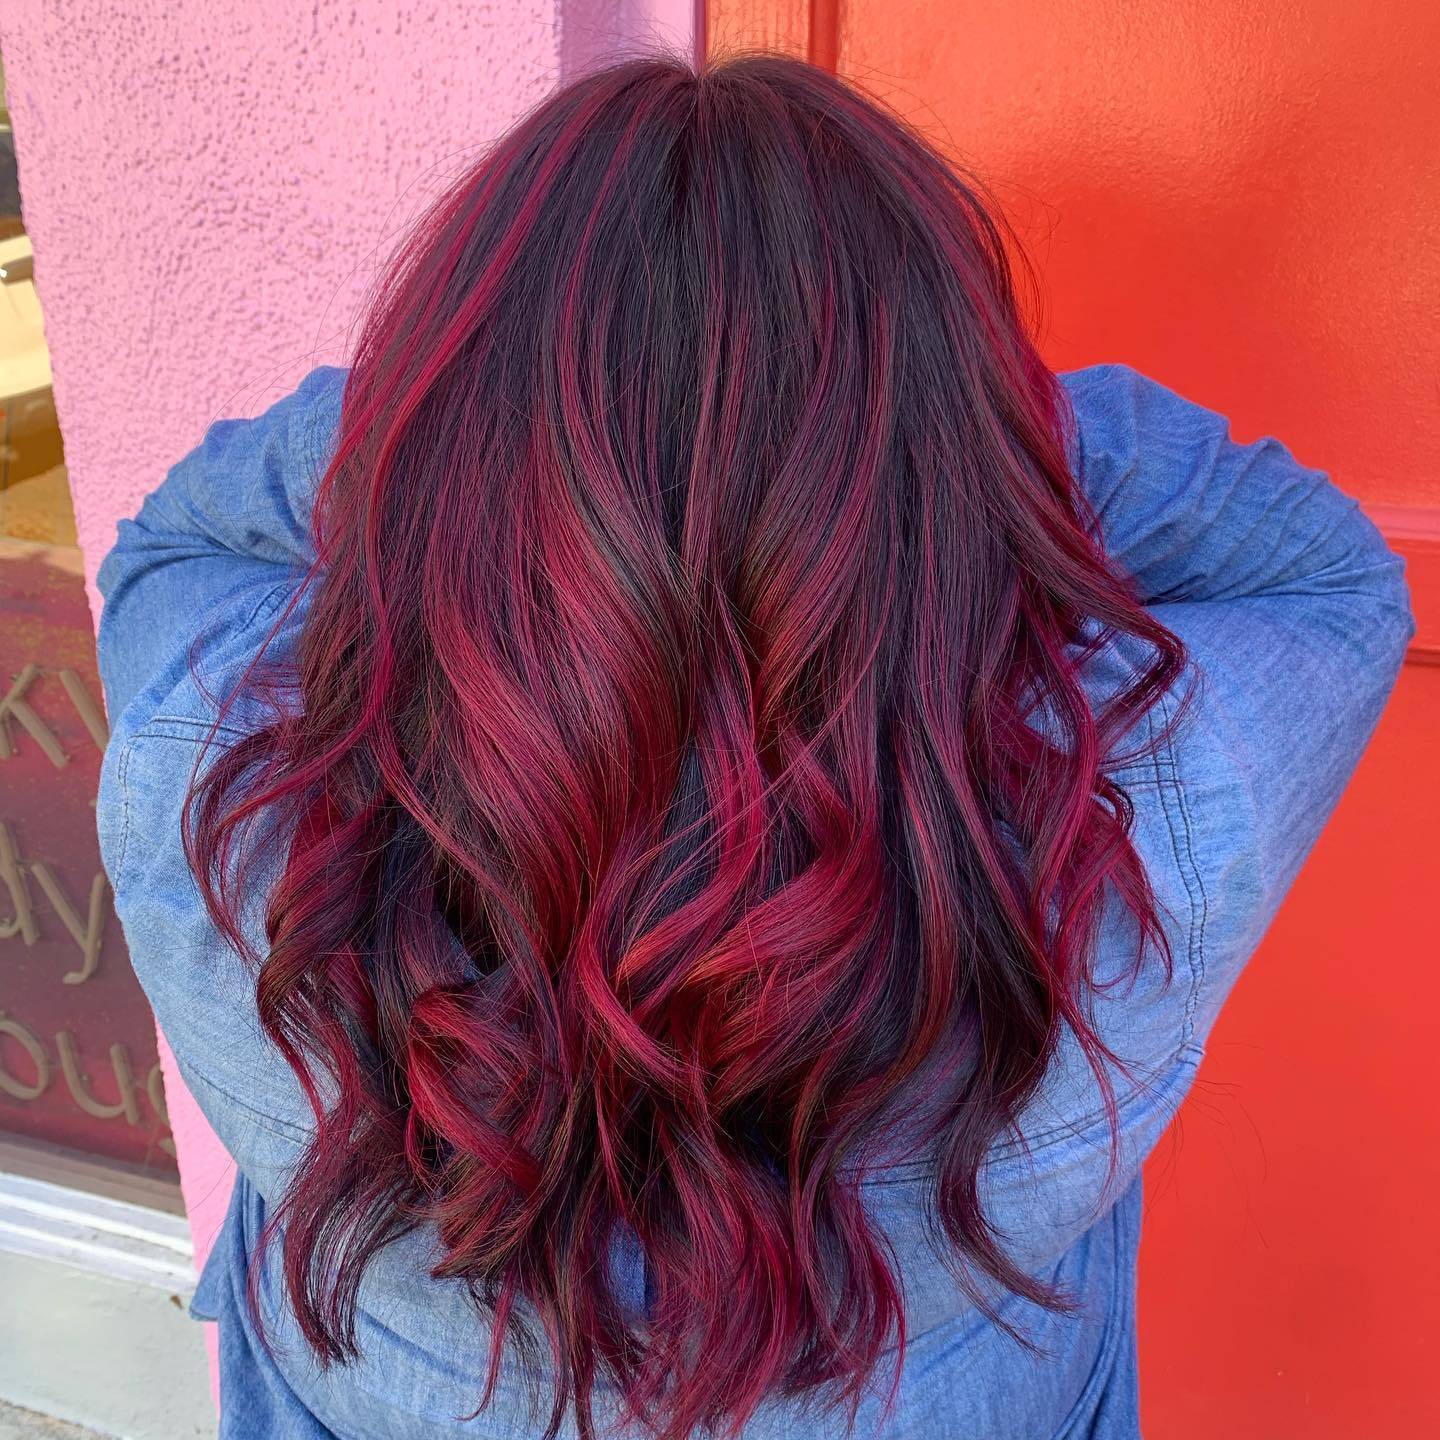 Burgundy hair color 307 burgundy hair color | burgundy hair color for women | burgundy hair color highlights Burgundy Hair Color